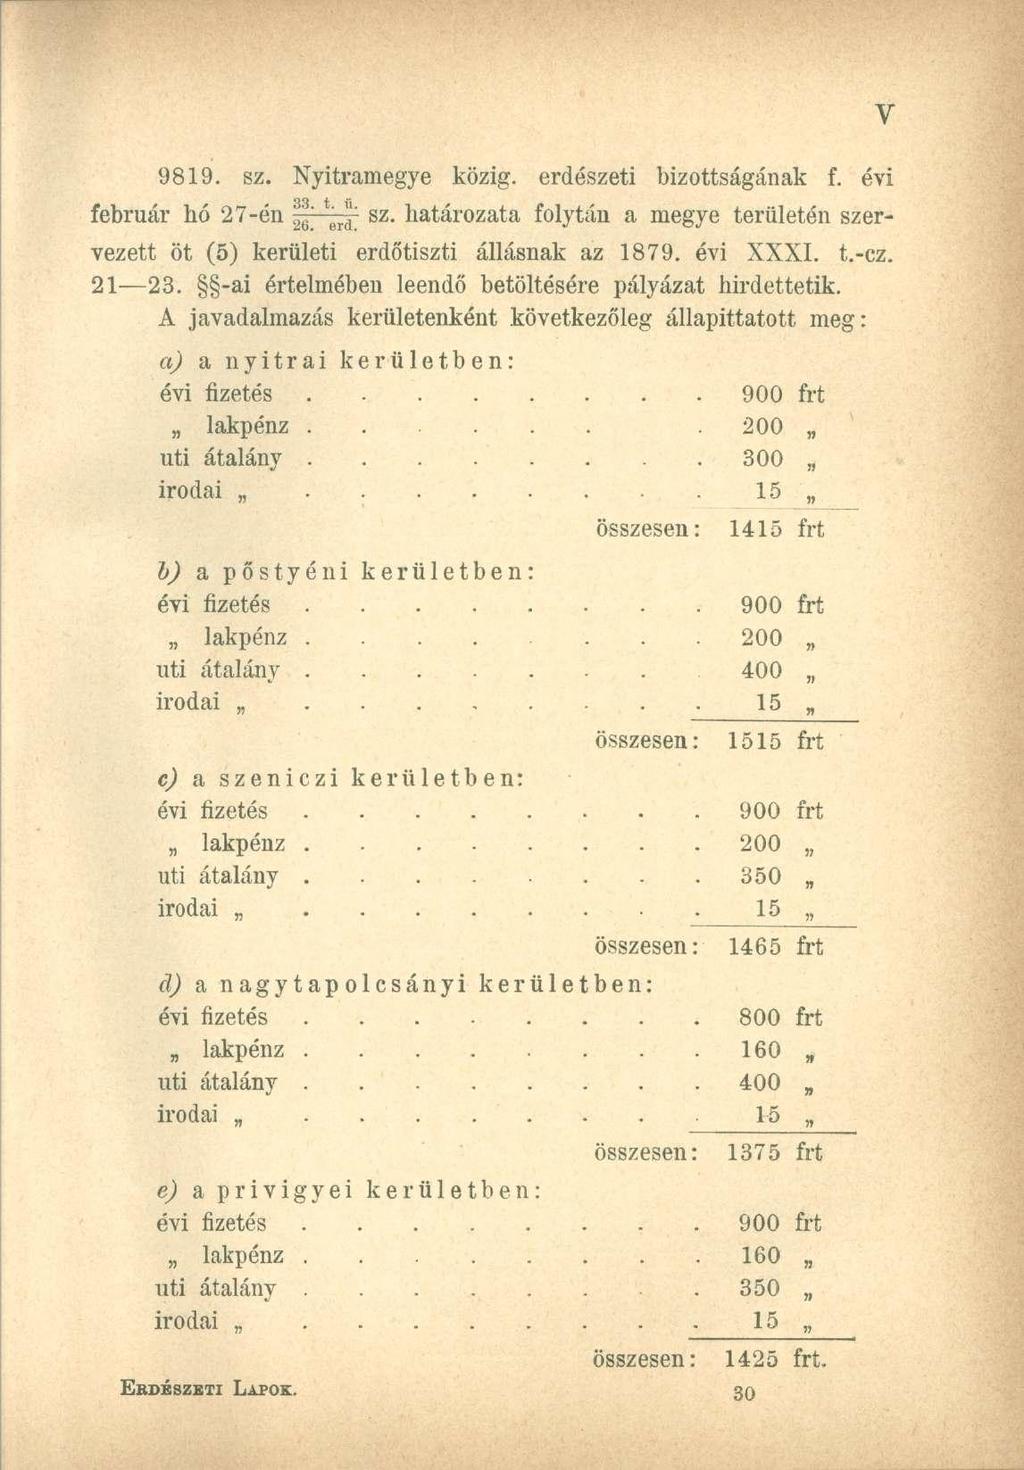 9819. sz. Nyitramegye közig, erdészeti bizottságának f. évi február hó 27-én f 6 ^ sz. határozata folytán a megye területén szervezett öt (5) kerületi erdőtiszti állásnak az 1879. évi XXXI. t.-cz.